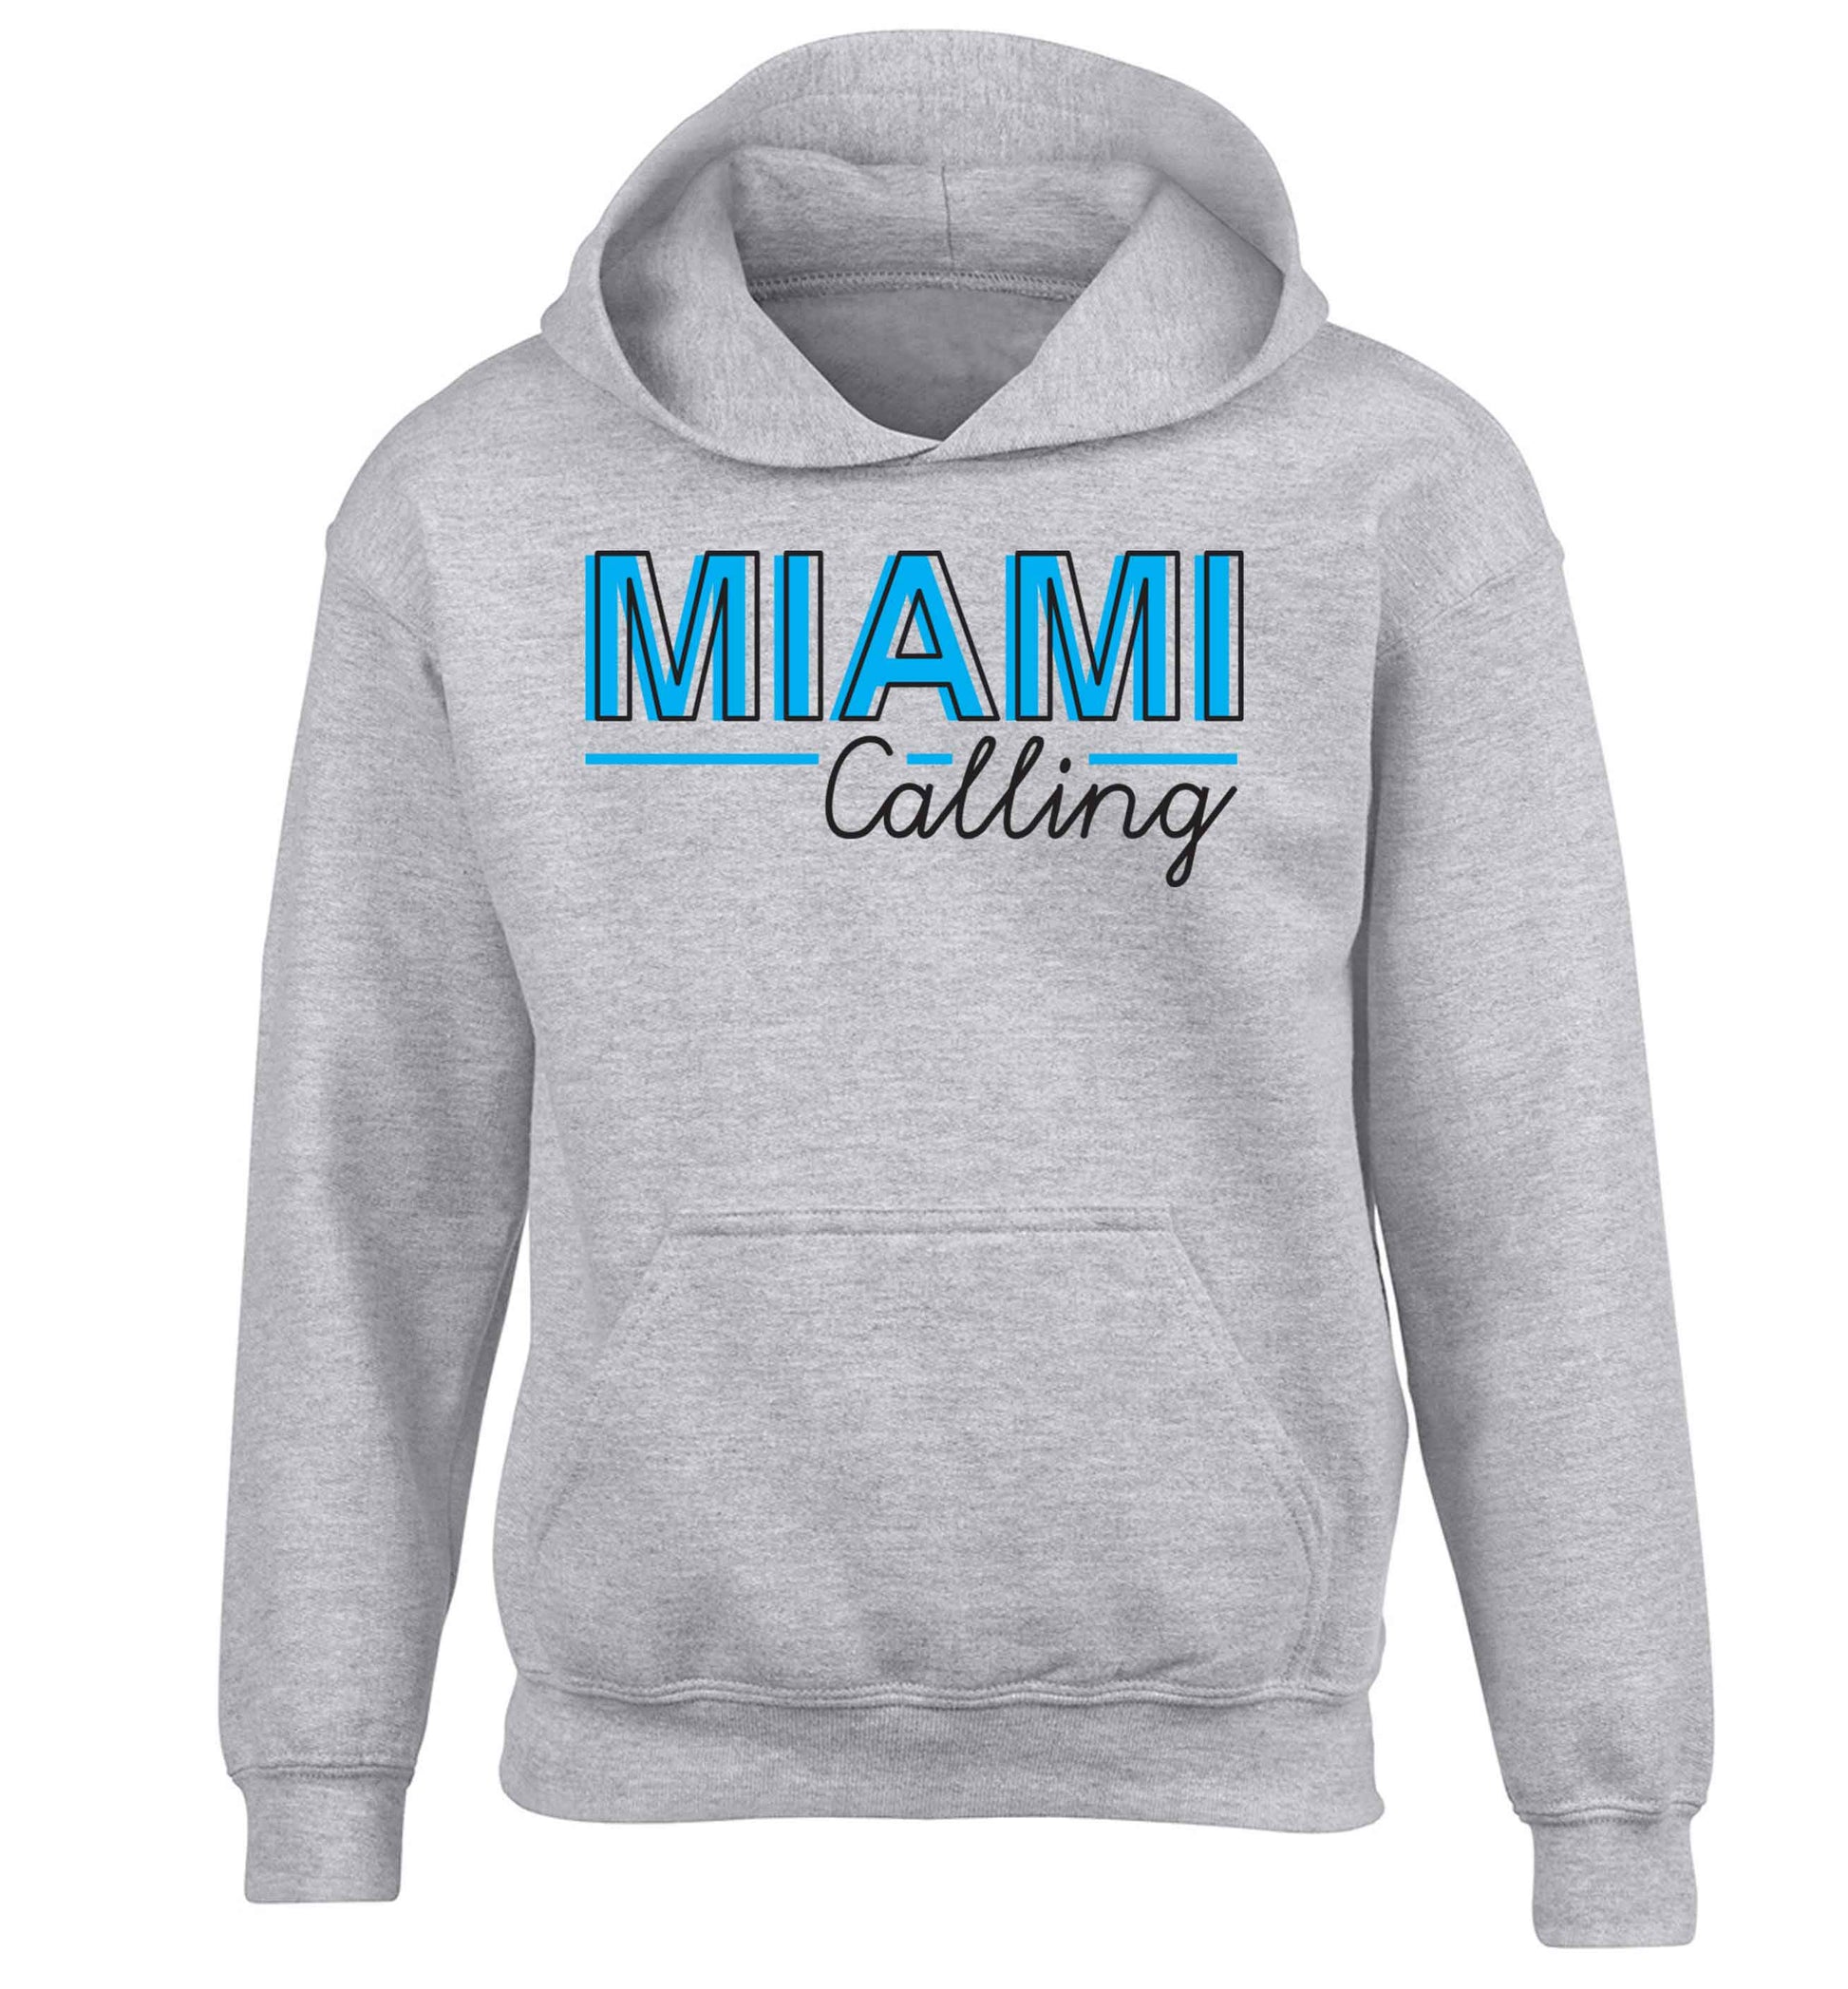 Miami calling children's grey hoodie 12-13 Years